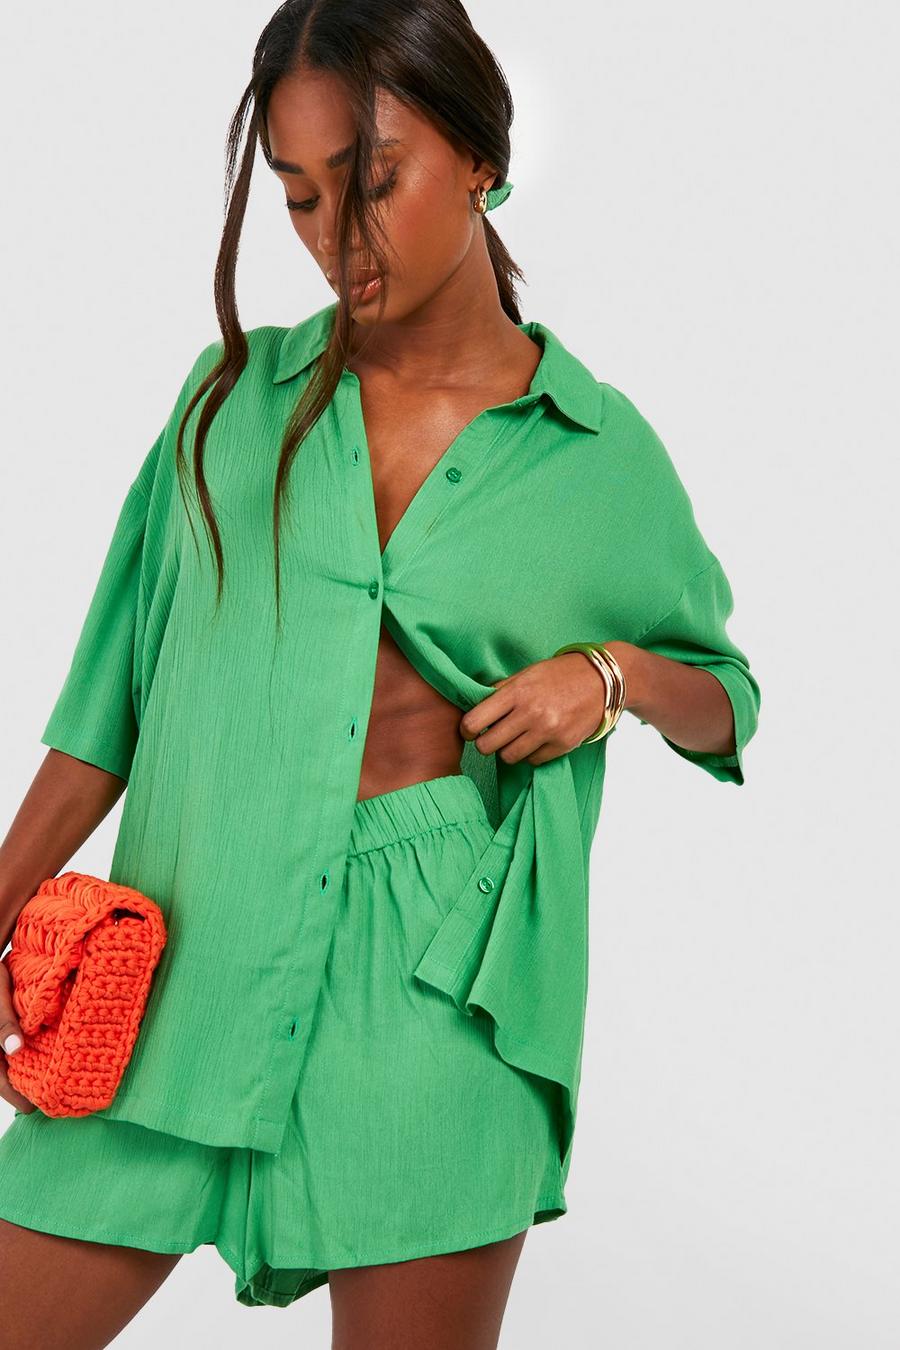 Ensemble texturé avec chemise, short et chouchou, Bright green